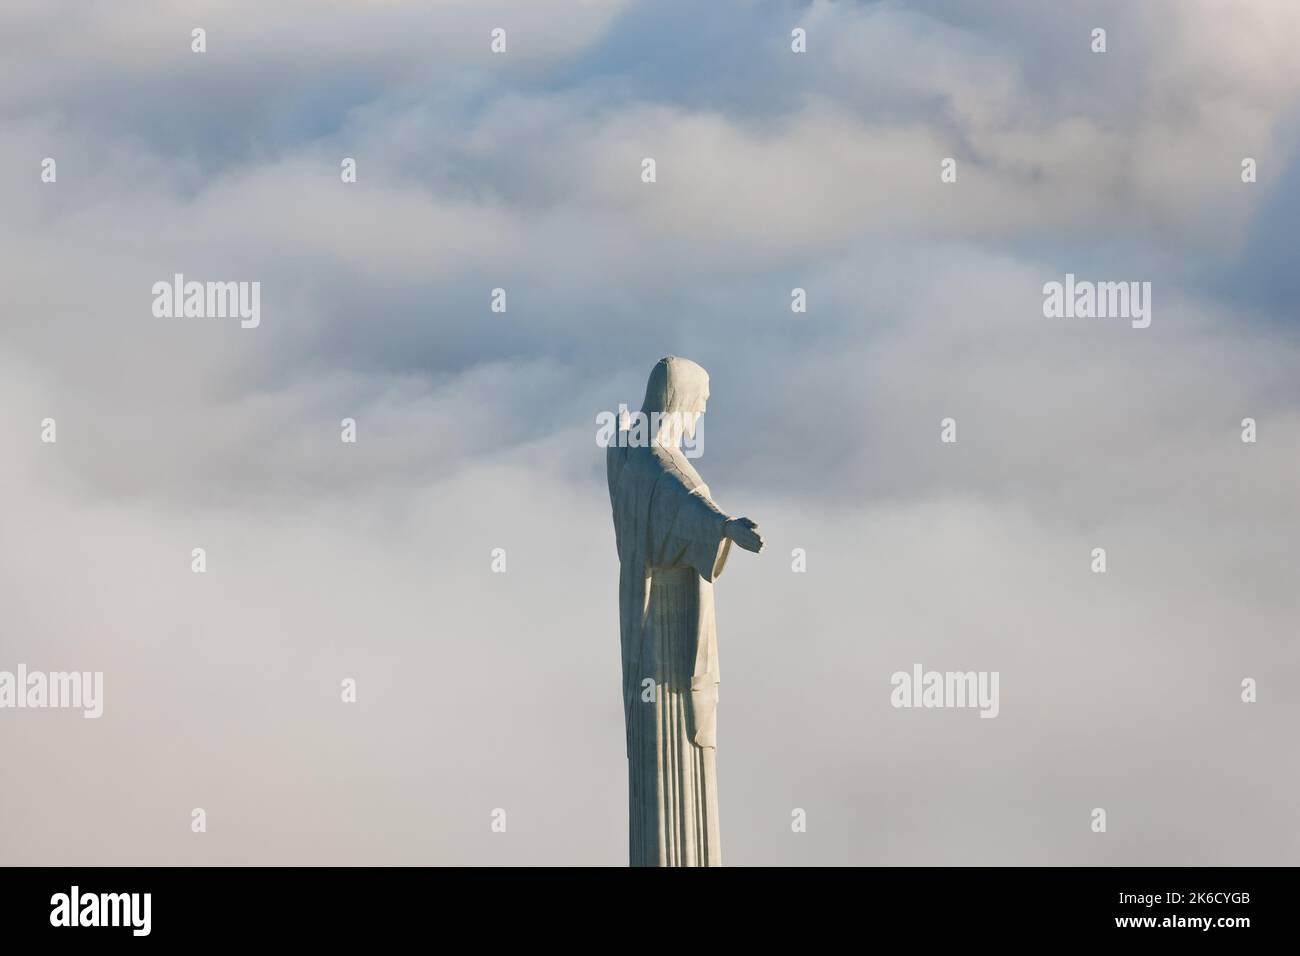 Die riesige Art déco-Statue Jesu, bekannt als Cristo Redentor (Christus der Erlöser), auf dem Corcovado-Berg in Rio de Janeiro, Brasilien. Die Statue ist 125 Stockfoto